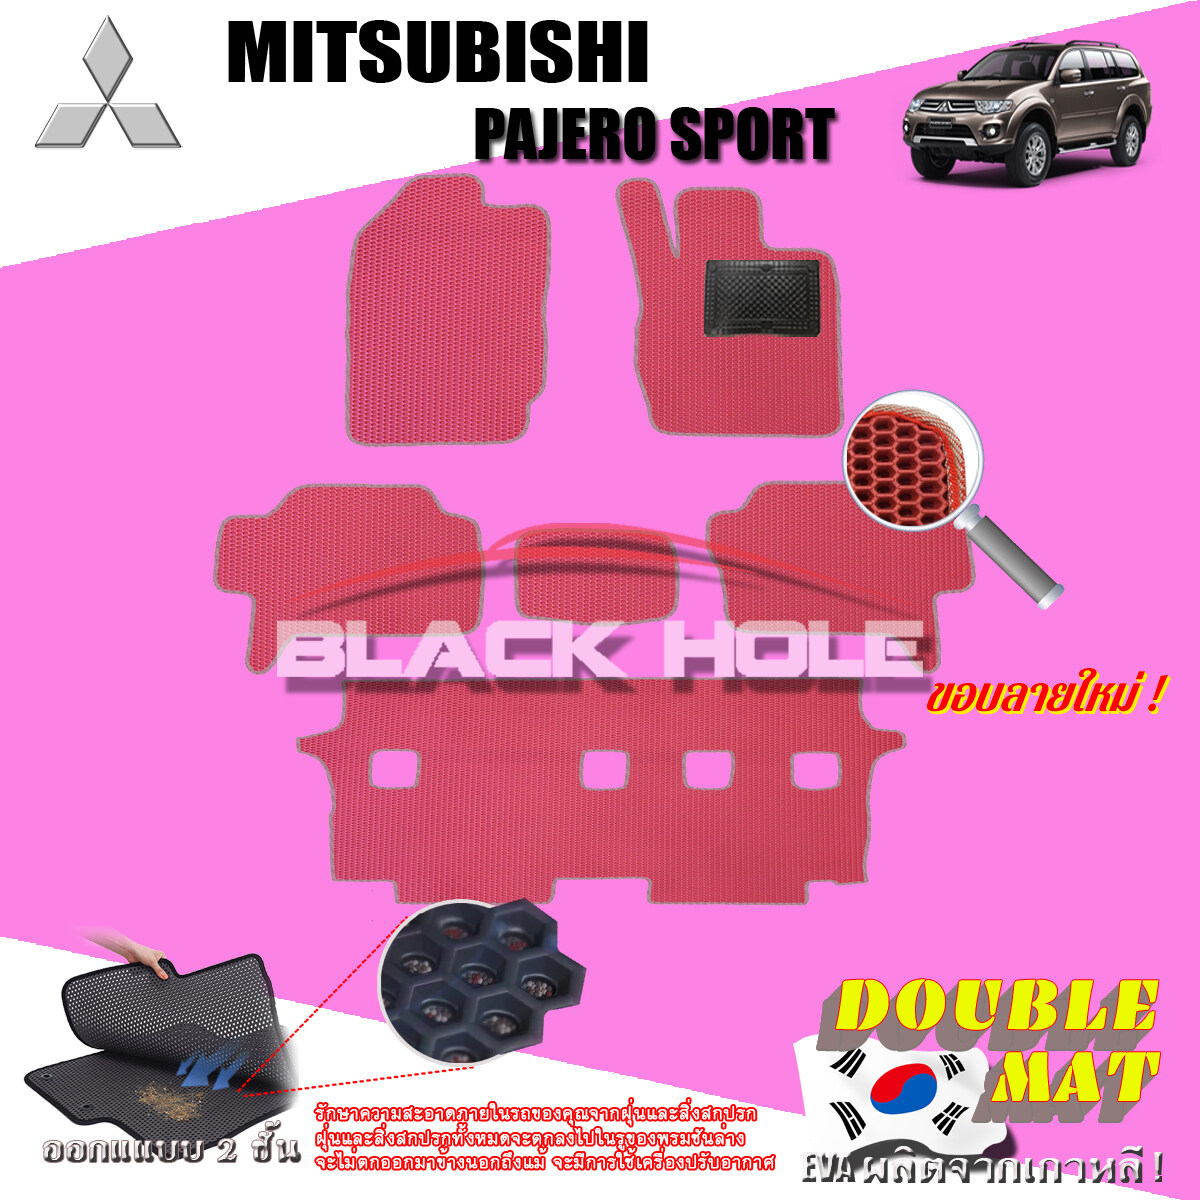 Mitsubishi Pajero Sport ปี 2008 - ปี 2014 พรมรถยนต์Pajero พรมเข้ารูปสองชั้นแบบรูรังผึ้ง Blackhole Double Mat (ชุดห้องโดยสาร) สี SET B ( 6 Pcs. ) New Velcro Red - แดงขอบลายใหม่ ( 6 ชิ้น ) สี SET B ( 6 Pcs. ) New Velcro Red - แดงขอบลายใหม่ ( 6 ชิ้น )